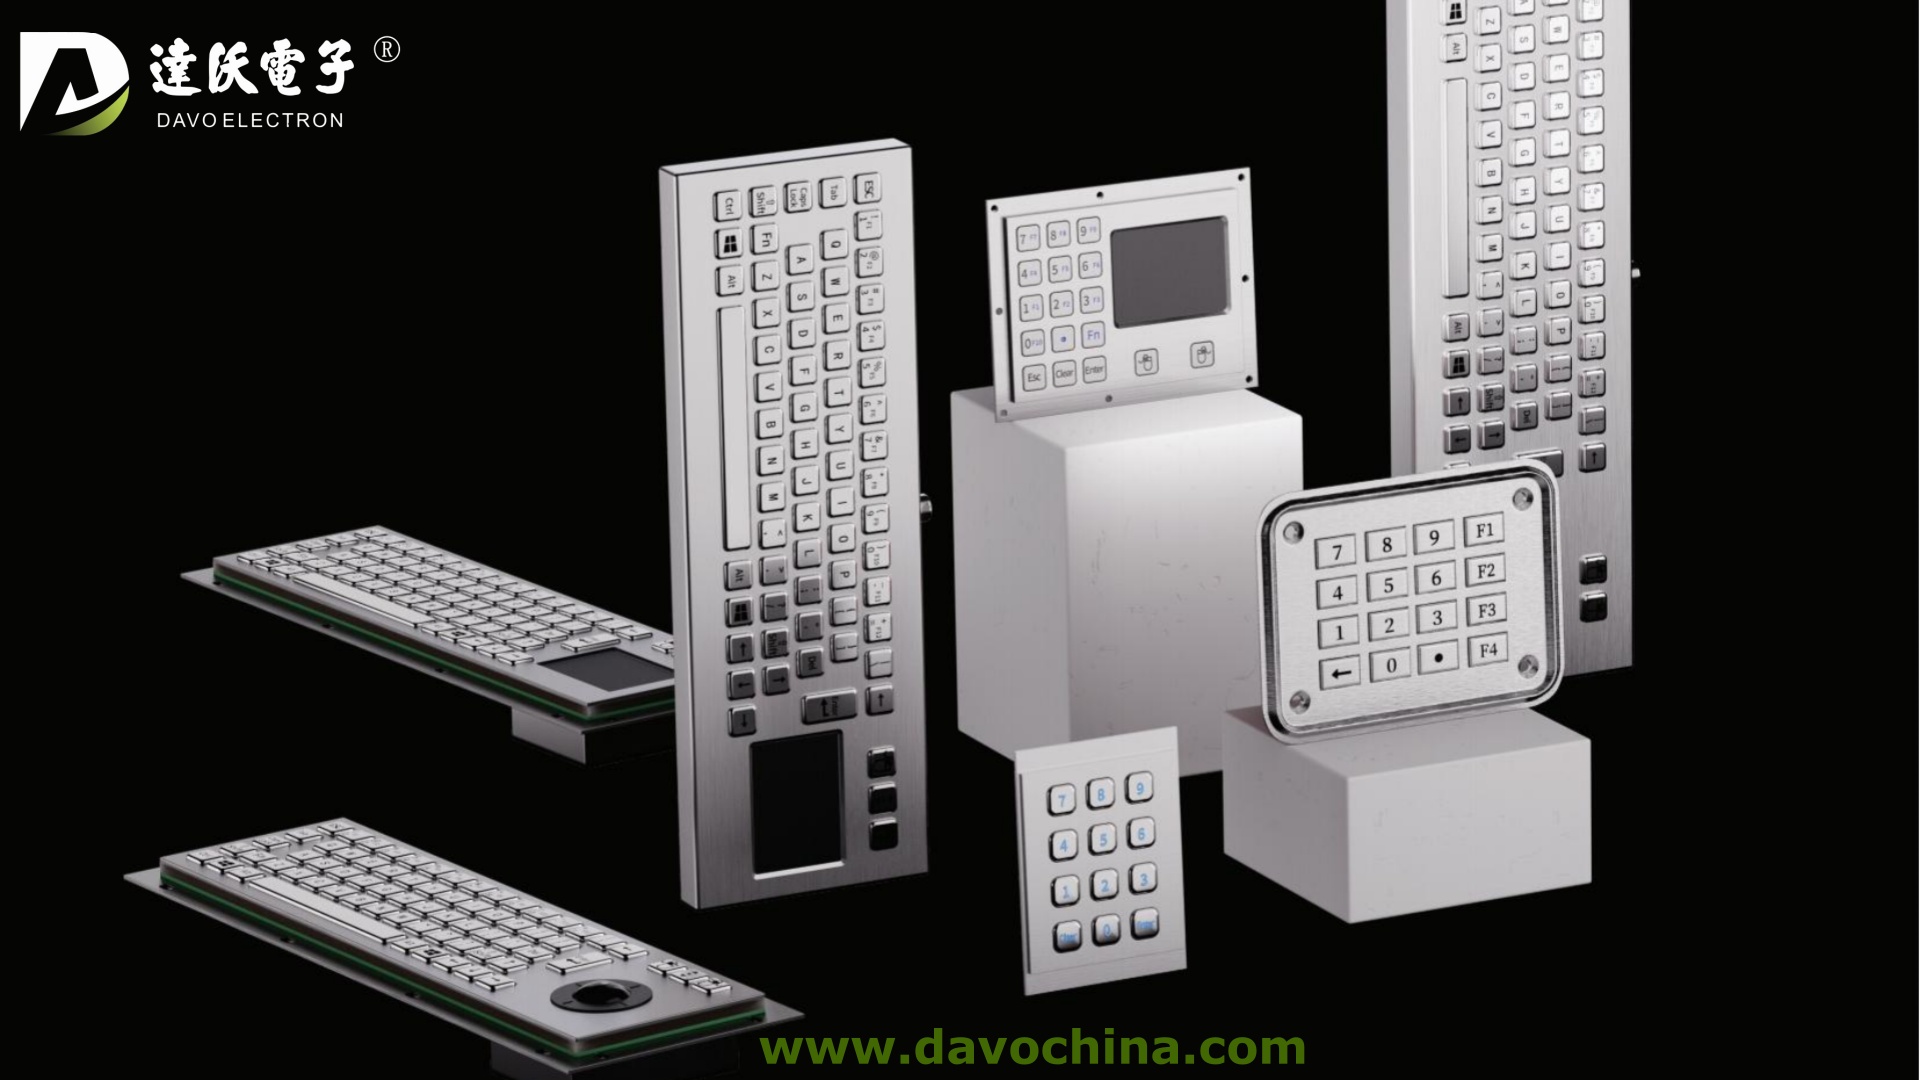 Revolucionando los sistemas de control industrial con los teclados industriales DAVO